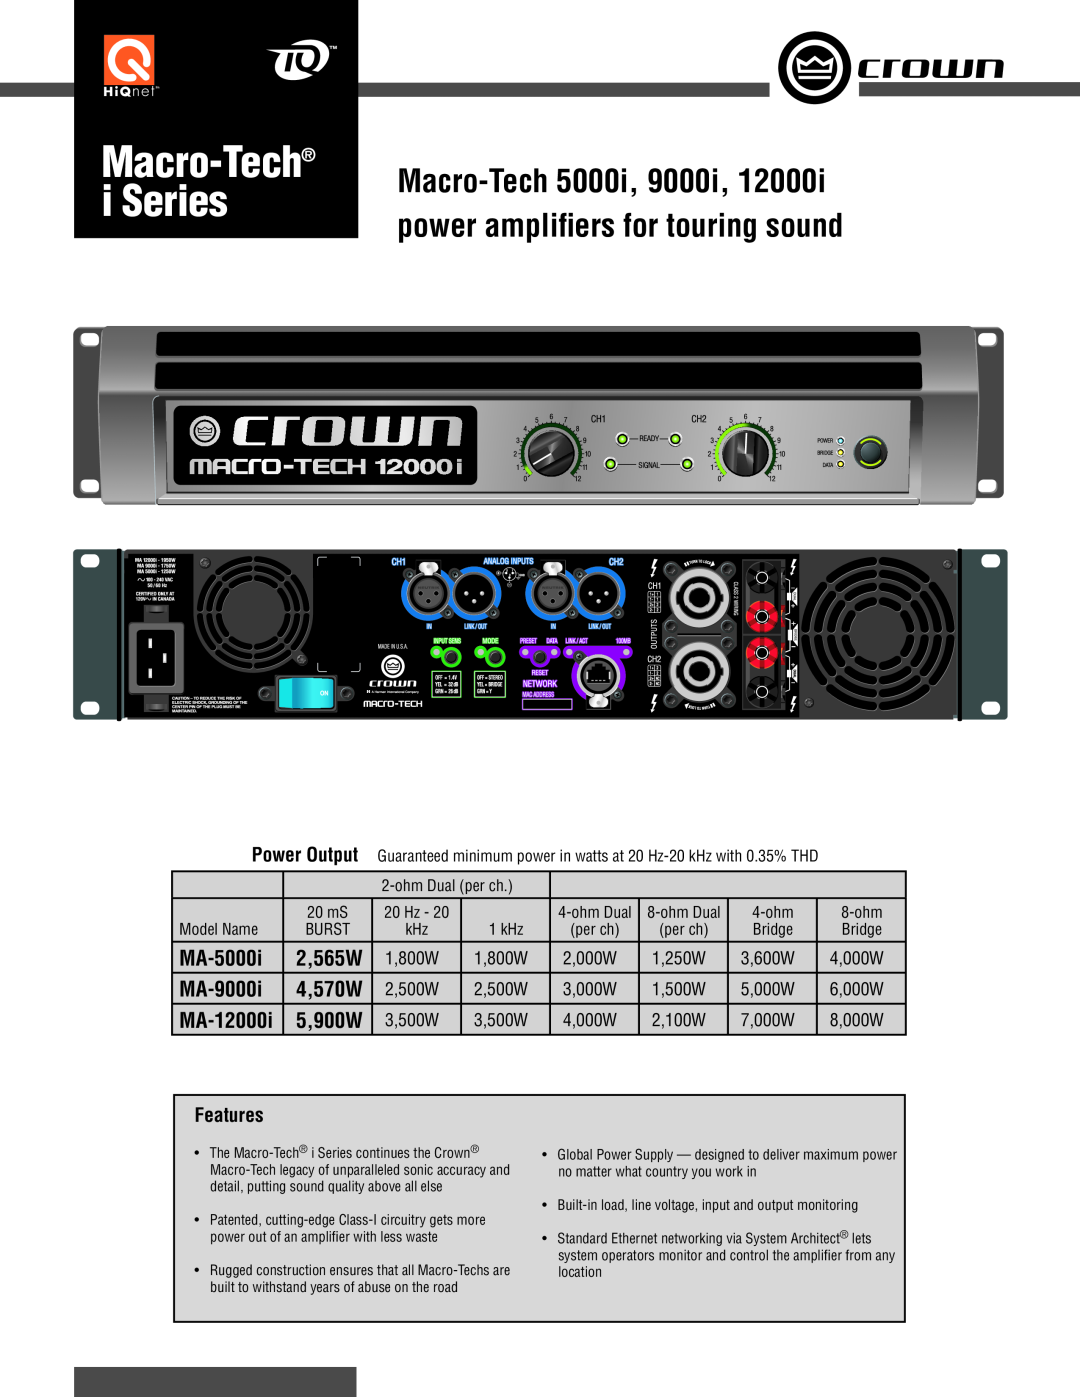 Crown 5000I manual i Series, Macro-Tech5000i, power ampliﬁers for touring sound, MA-5000i, MA-9000i, MA-12000i, 2,565W 